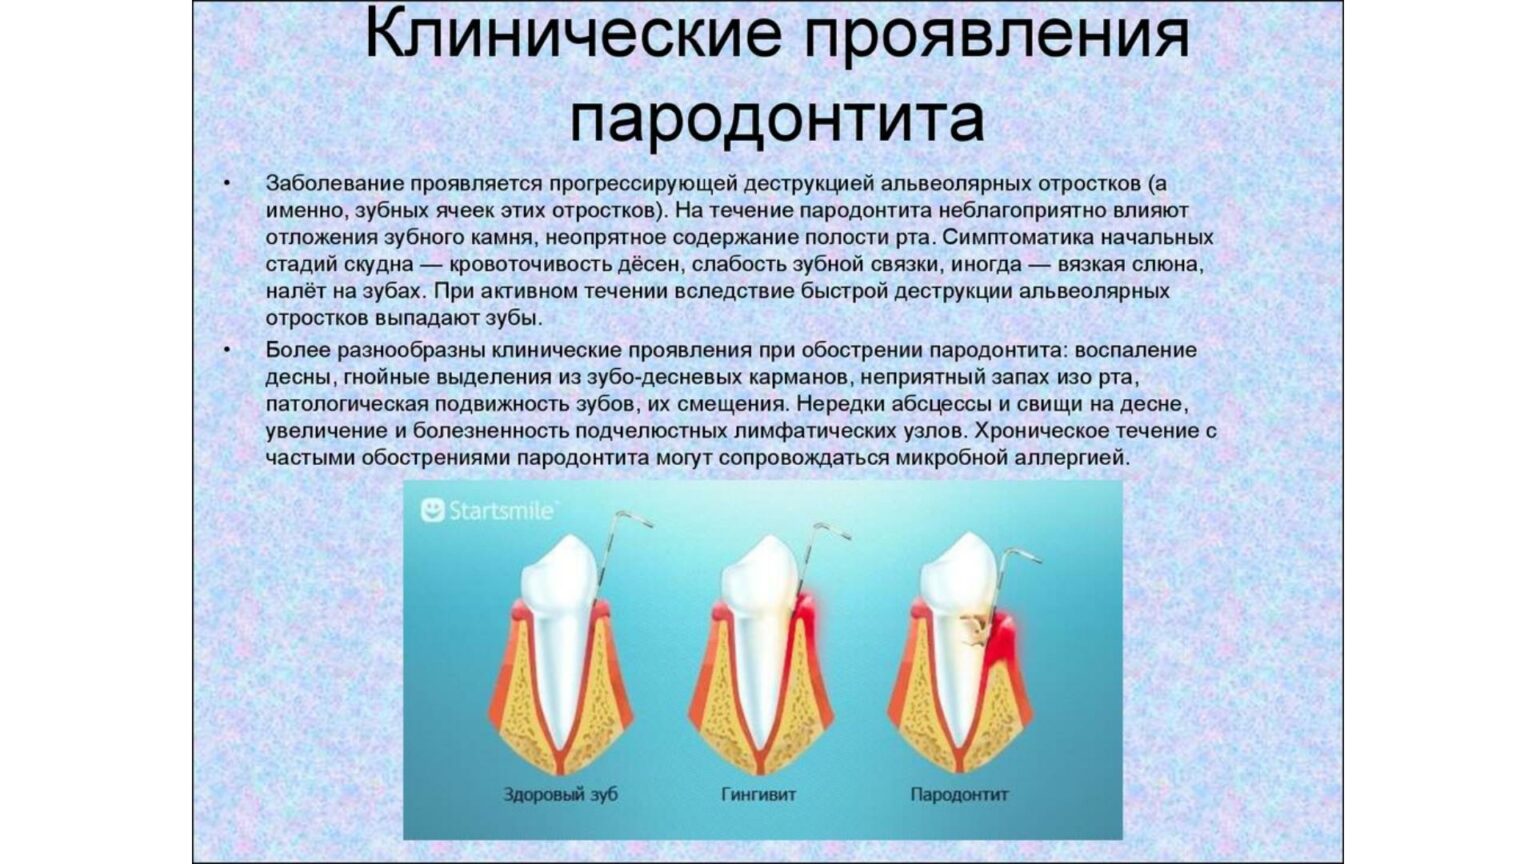 Классификация поражений зубов. Пародонтит локализованный классификация. Гингивит пародонтит классификация. Клинические проявления пародонтита. Клинические проявления заболеваний пародонта.